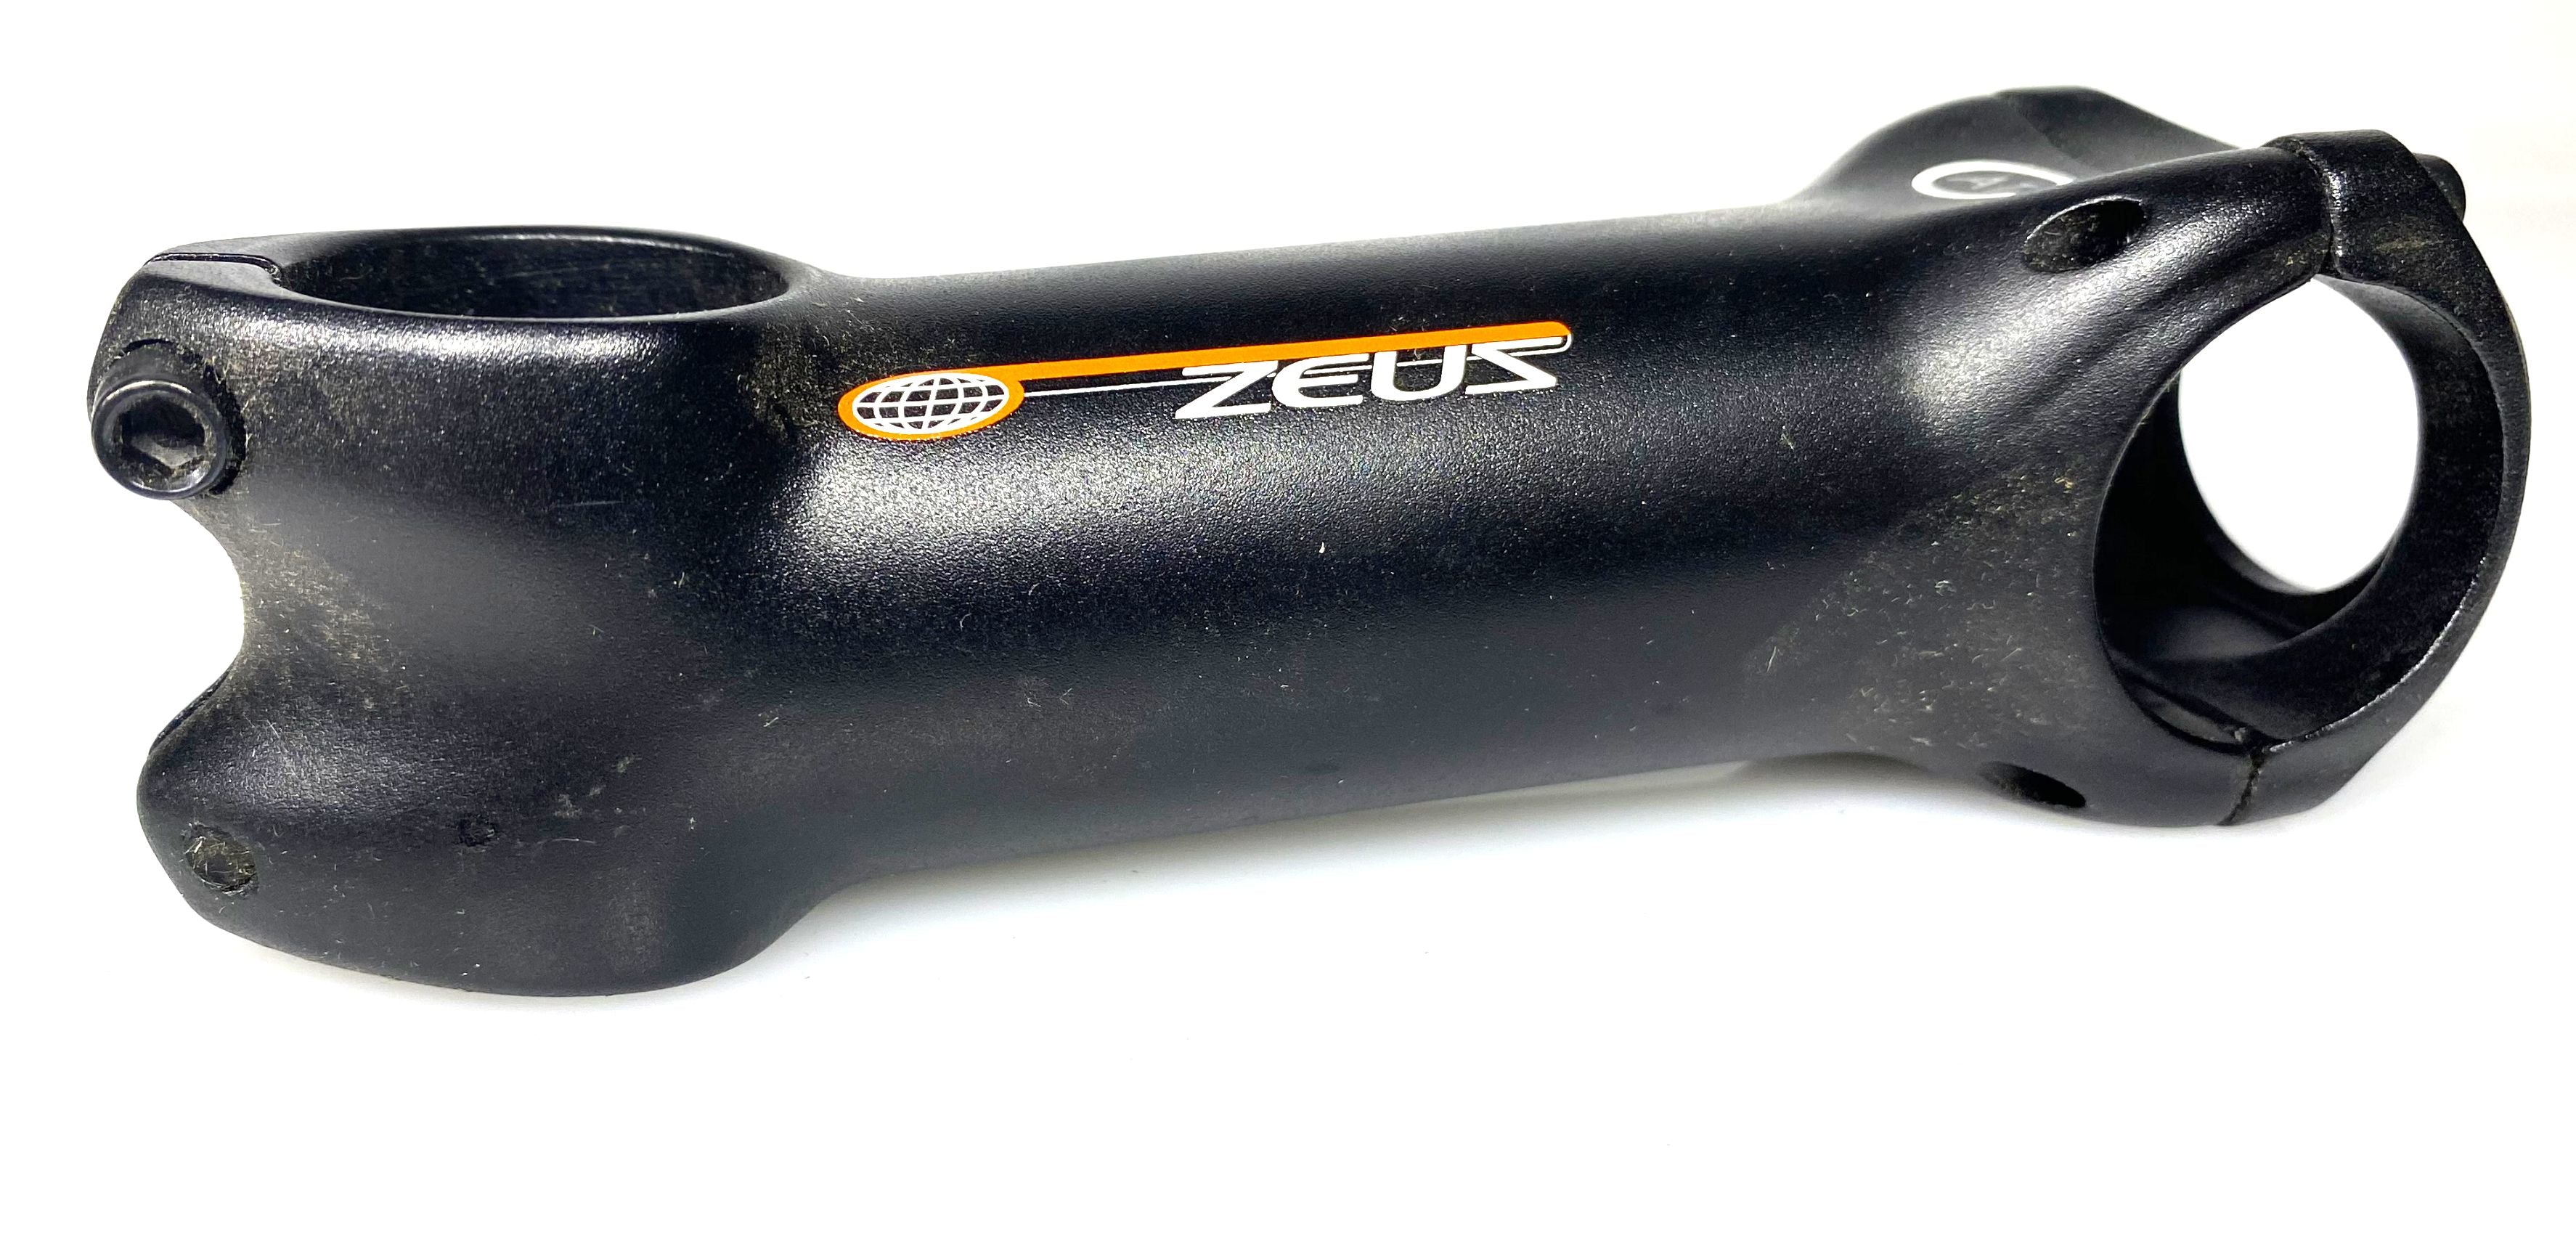 Zeus AT2 Bike Stem 31.8 mm x 105mm x 1-1/8" Threadless Black NEW BLEM